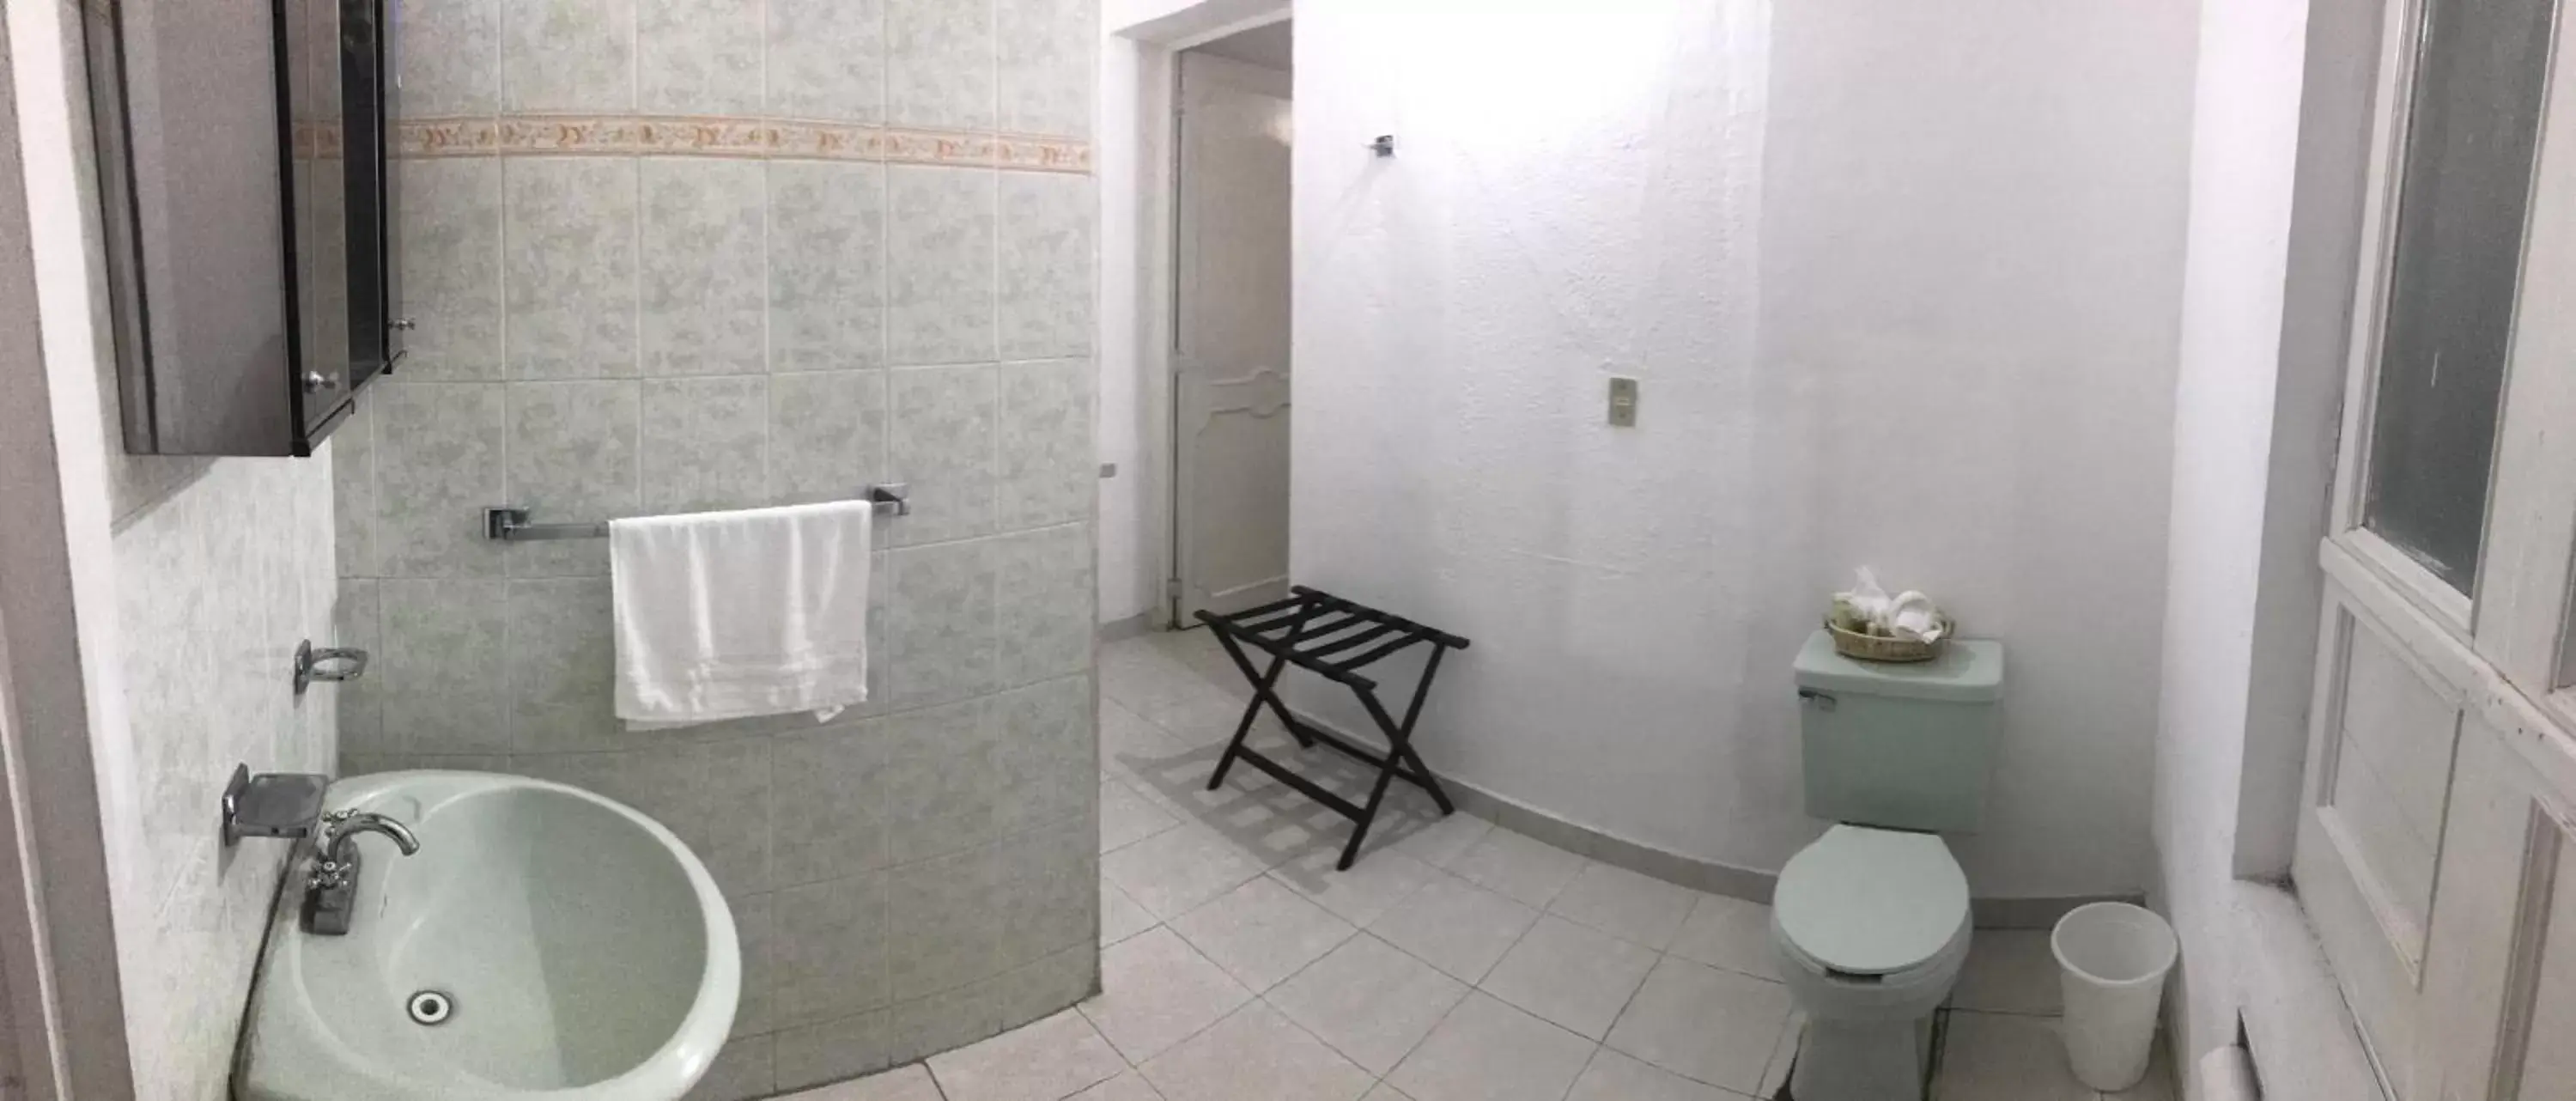 Bathroom in Antigua Casa de la Alameda